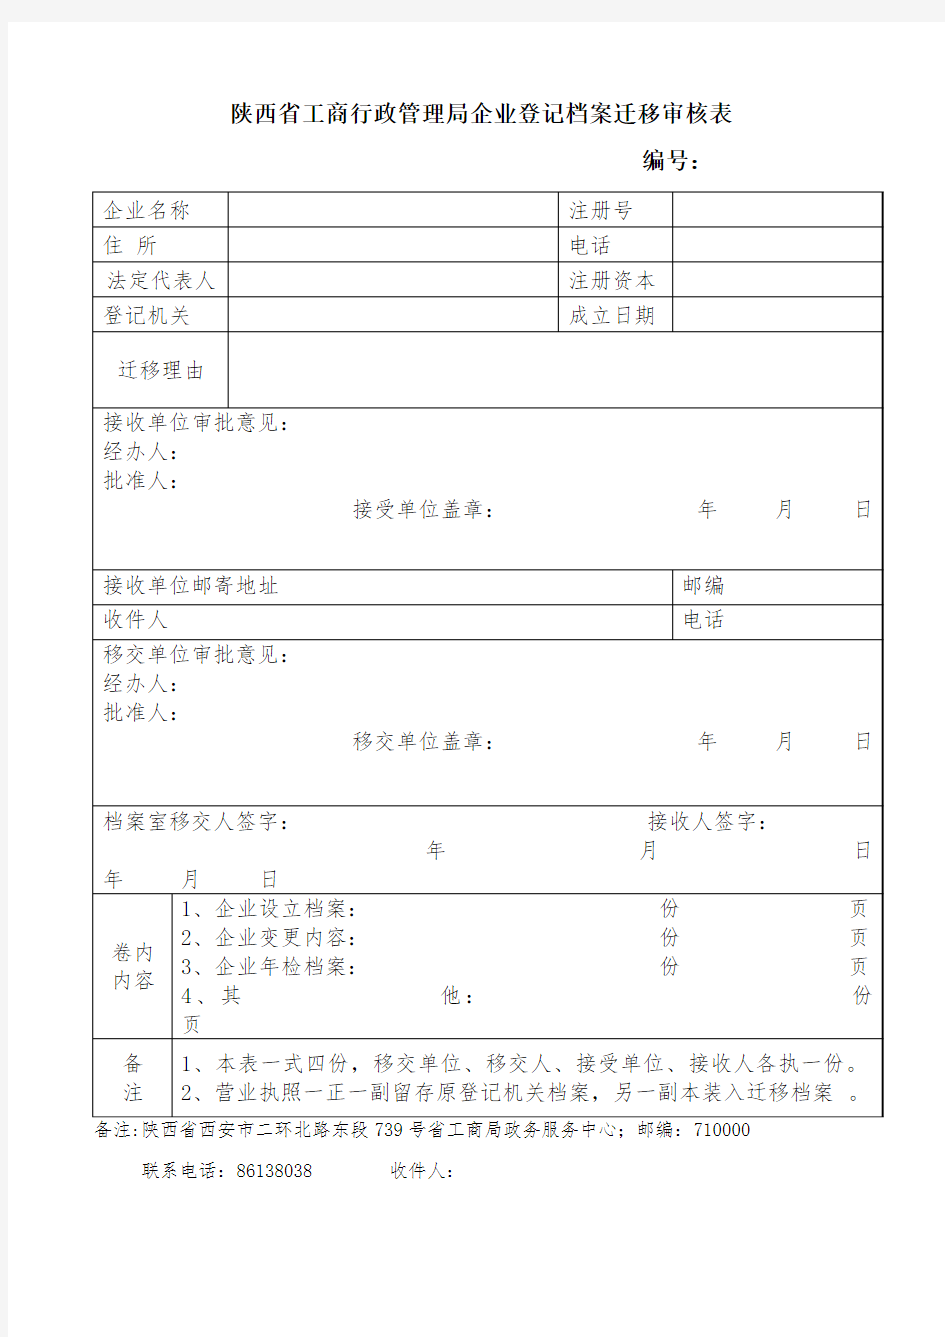 陕西省工商行政管理局企业登记档案迁移审核表